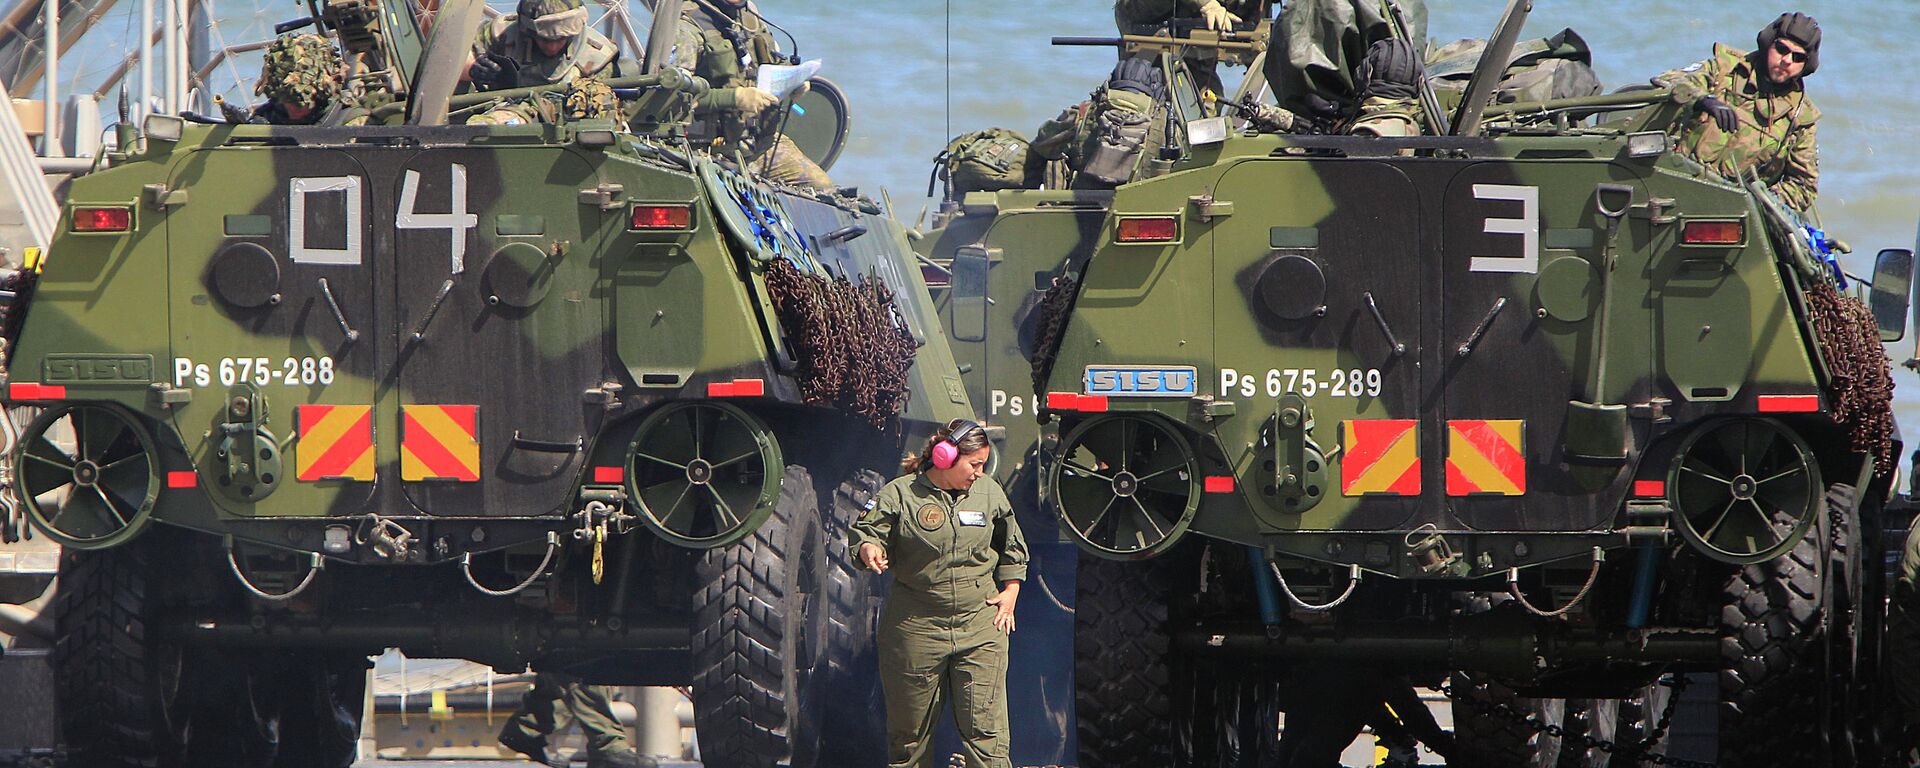 Tropas de la OTAN participan en ejercicios militares en el Mar Báltico, cerca de las fronteras con Rusia. Polonia, 17 de junio de 2015 - Sputnik Mundo, 1920, 27.06.2022